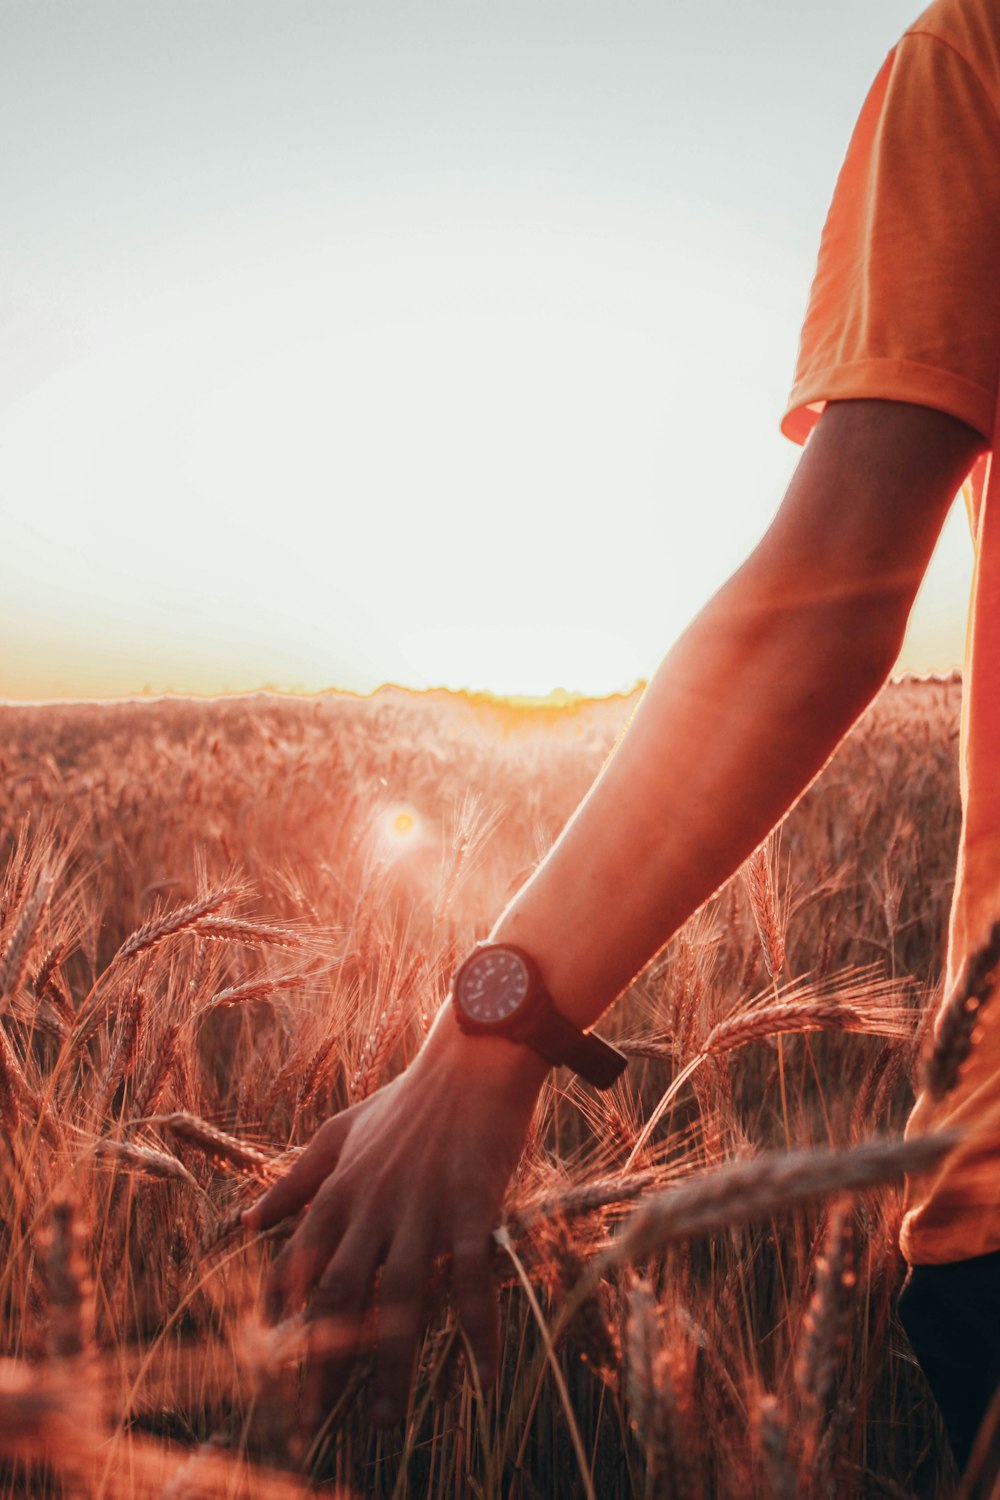 personne en t-shirt orange portant une montre noire debout sur un champ d’herbe brune pendant la journée